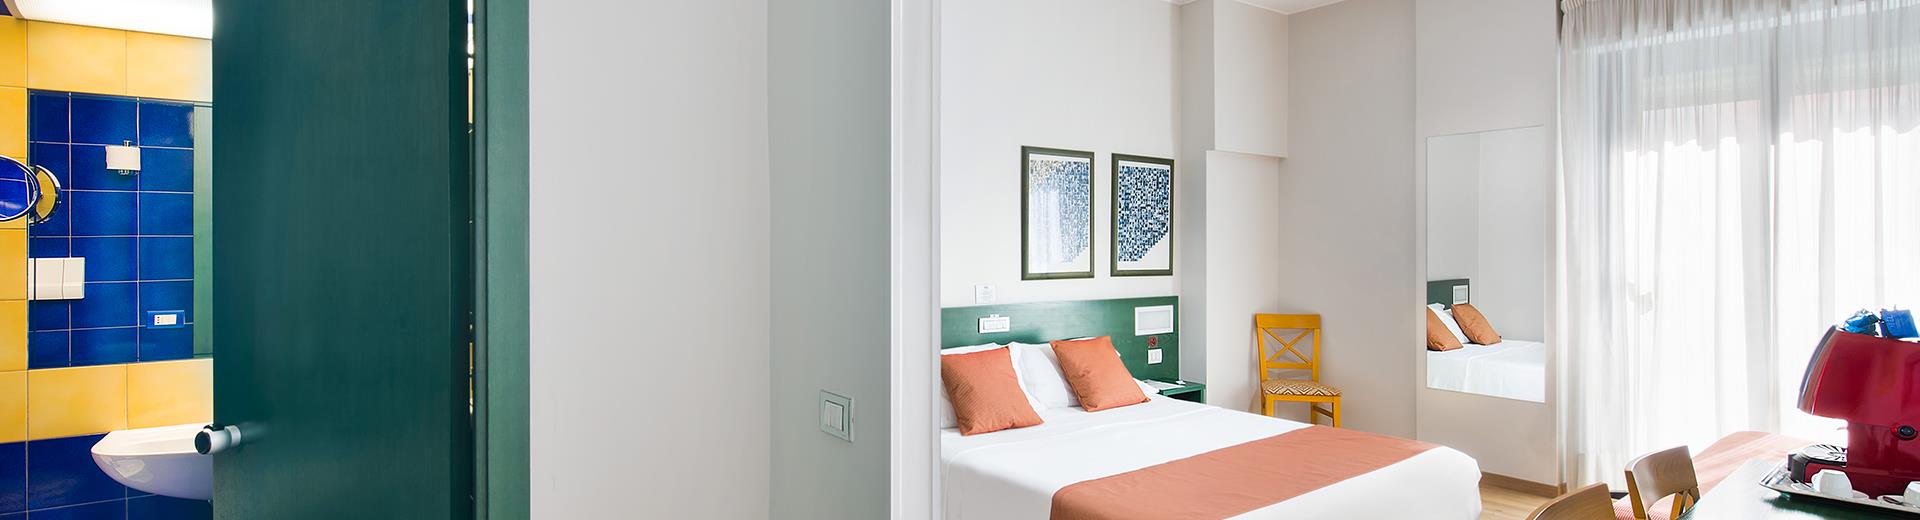 Scegli il comfort: prenota le camere di Hotel Mediterraneo a Catania!